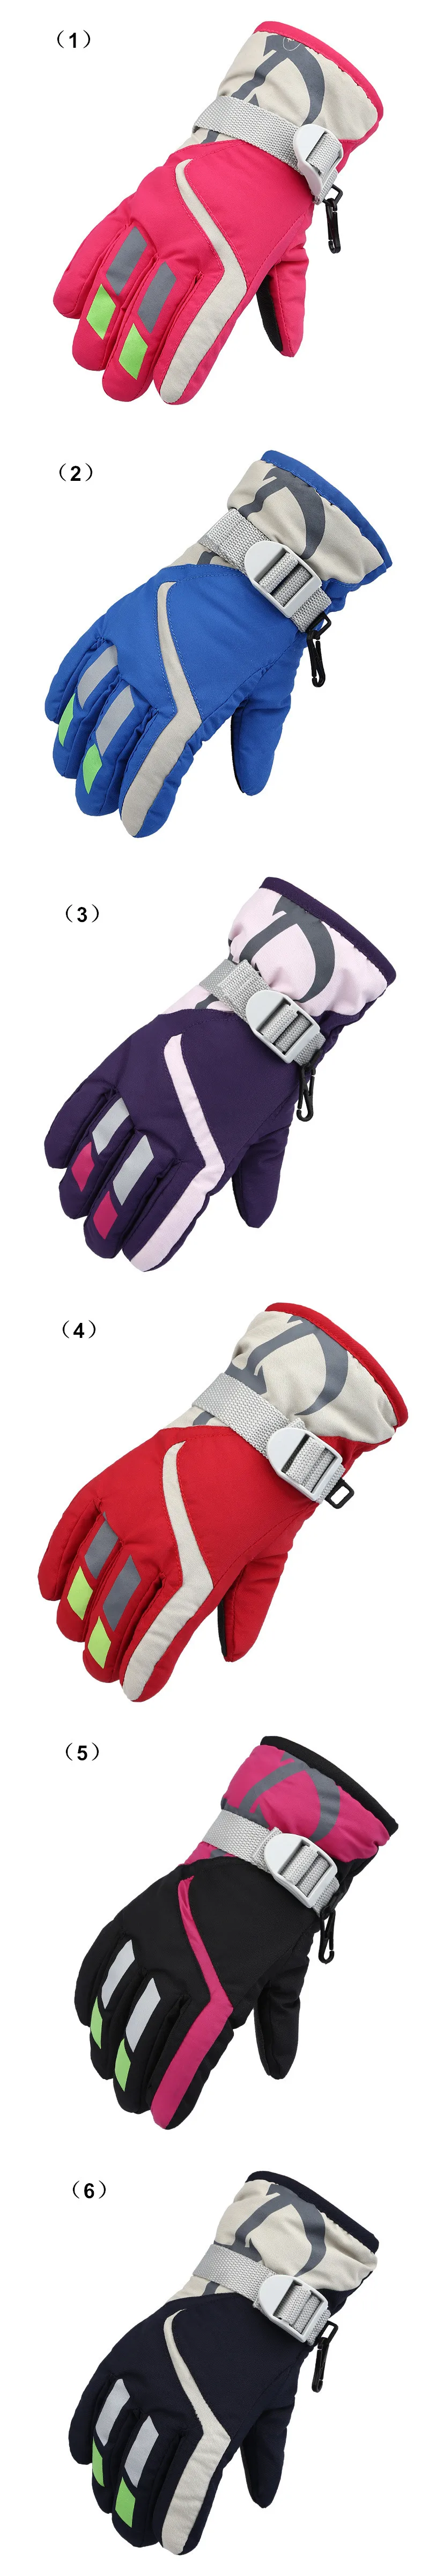 Высококачественные зимние теплые лыжные перчатки, Детские уличные спортивные водонепроницаемые ветрозащитные перчатки для катания на лыжах